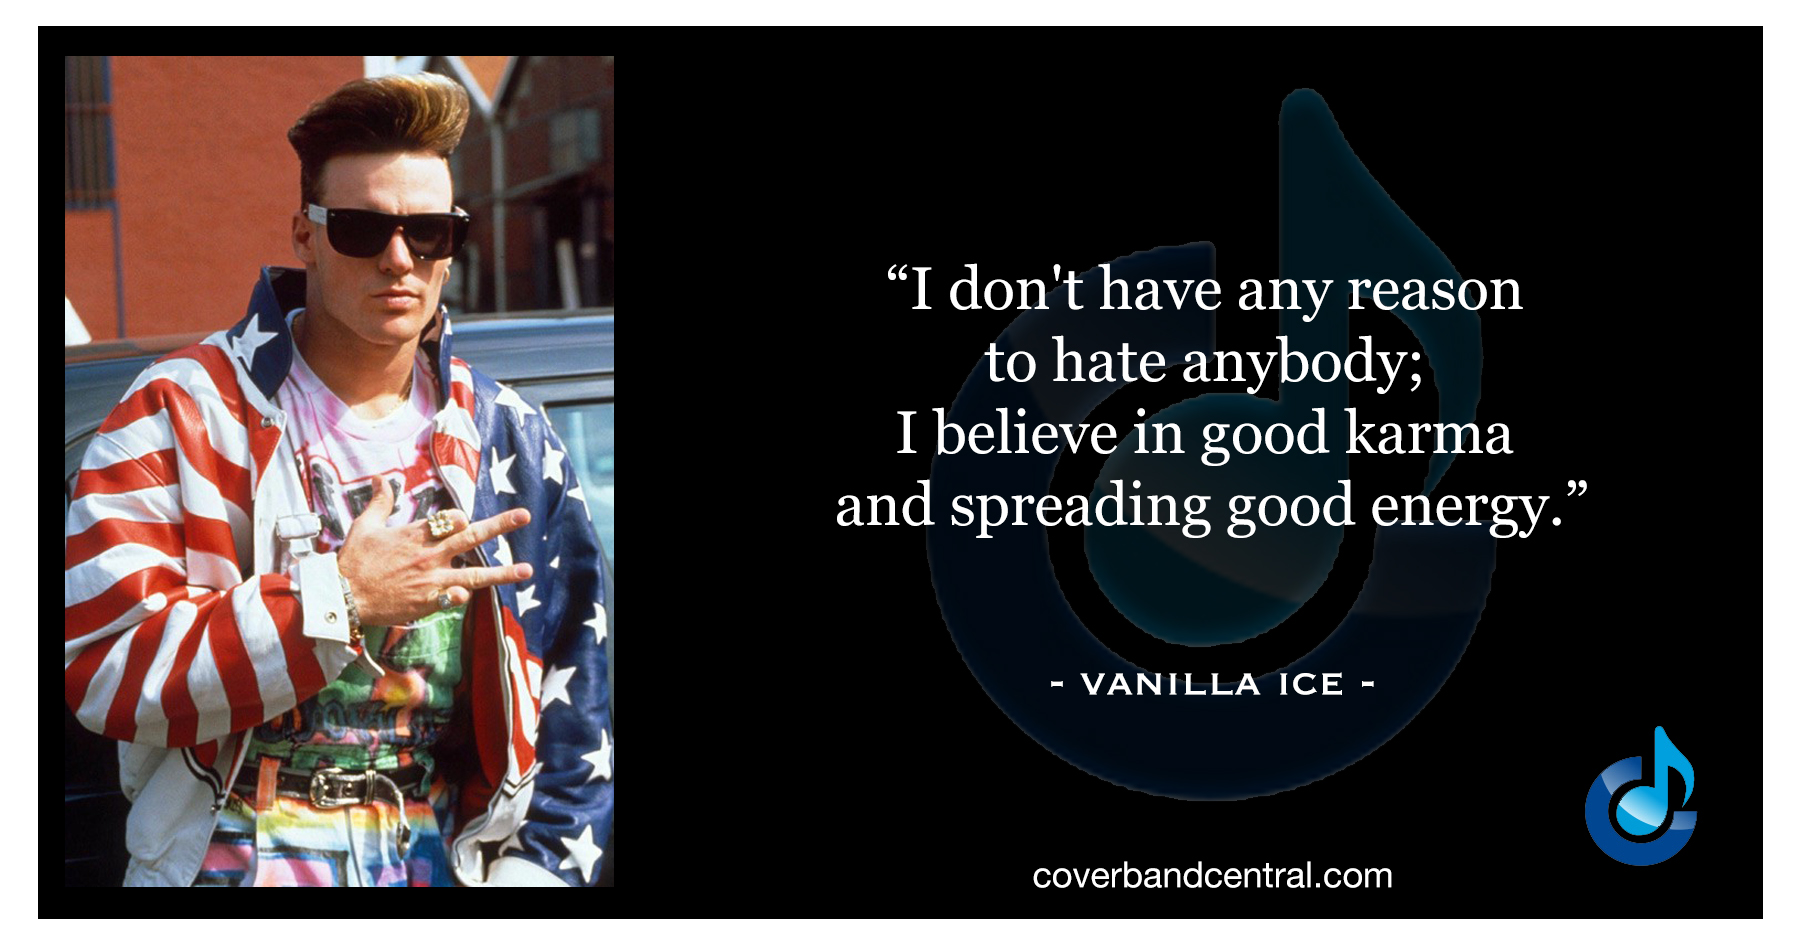 Vanilla Ice quote